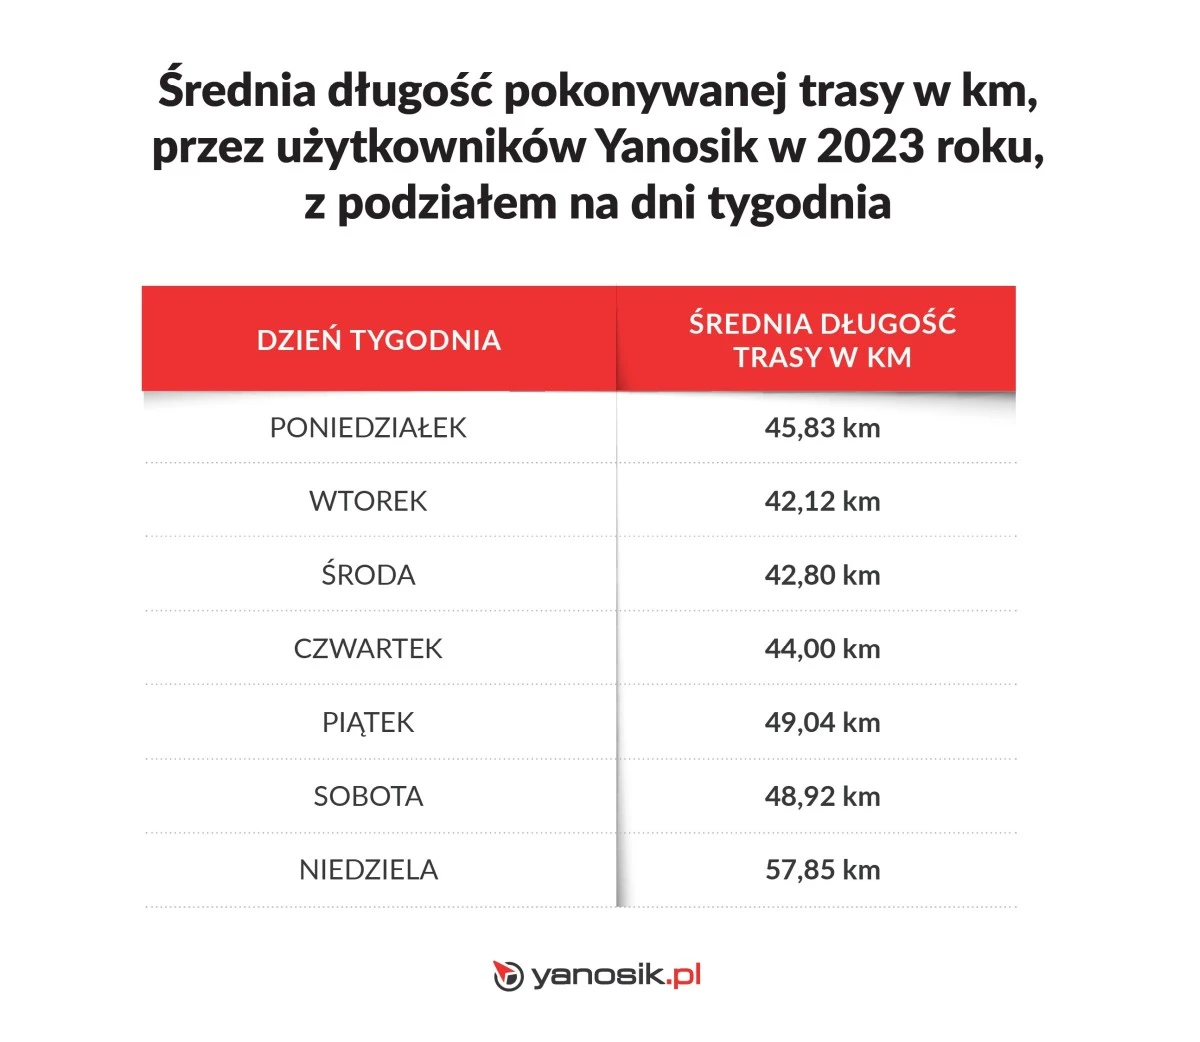 Średnia długość pokonywanej trasy w km przez uzytkowników Yanosika w 2023 z podziałem na dni tygodnia